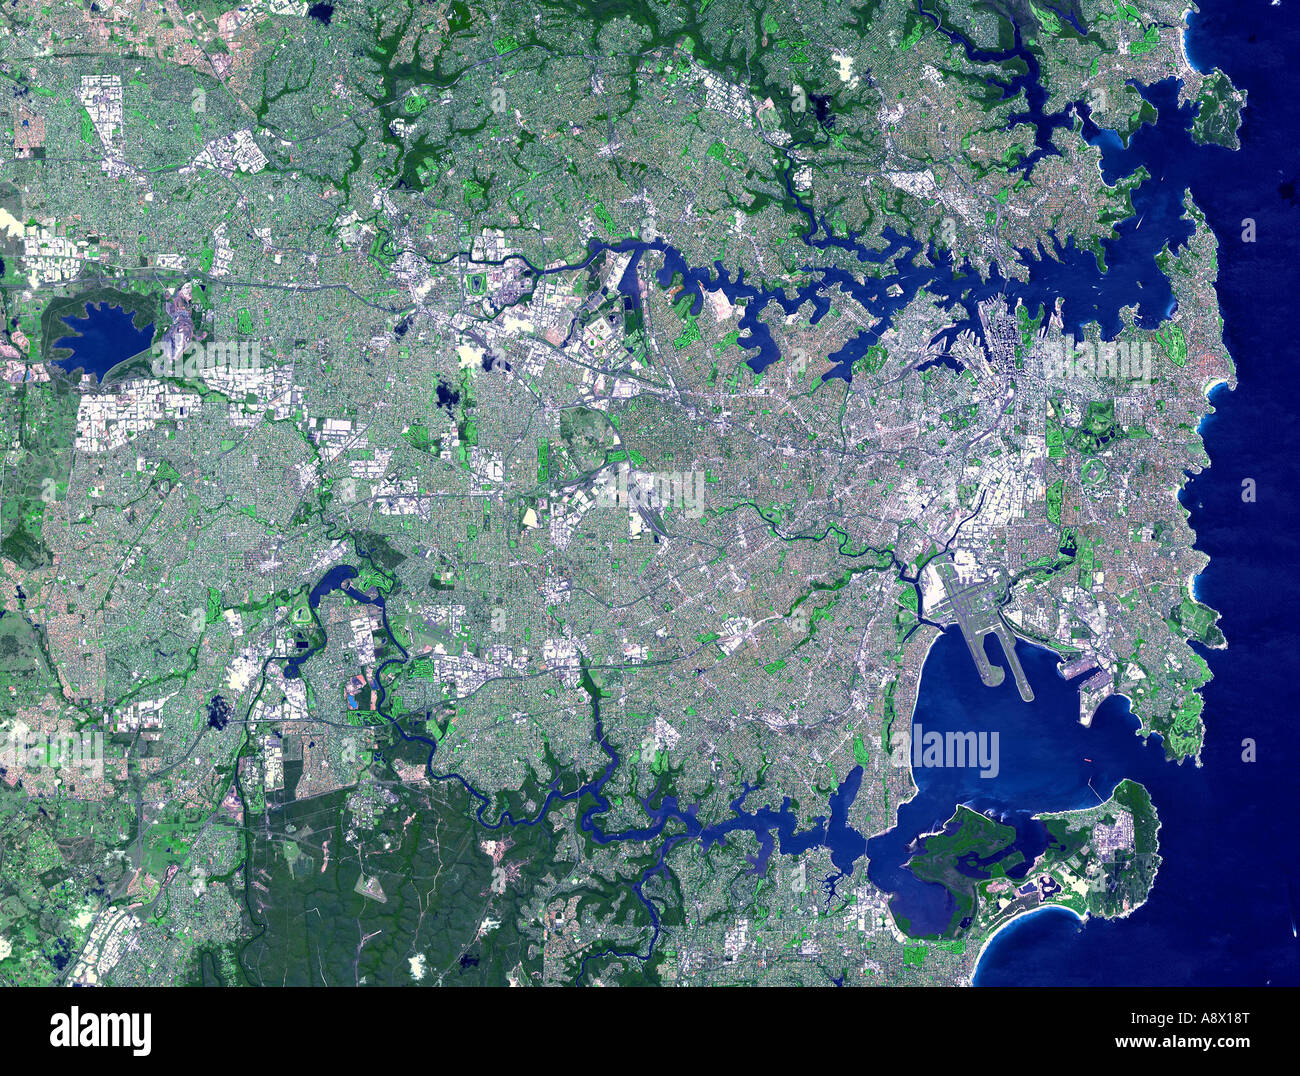 Sydney (Australia) visto desde el espacio Foto de stock